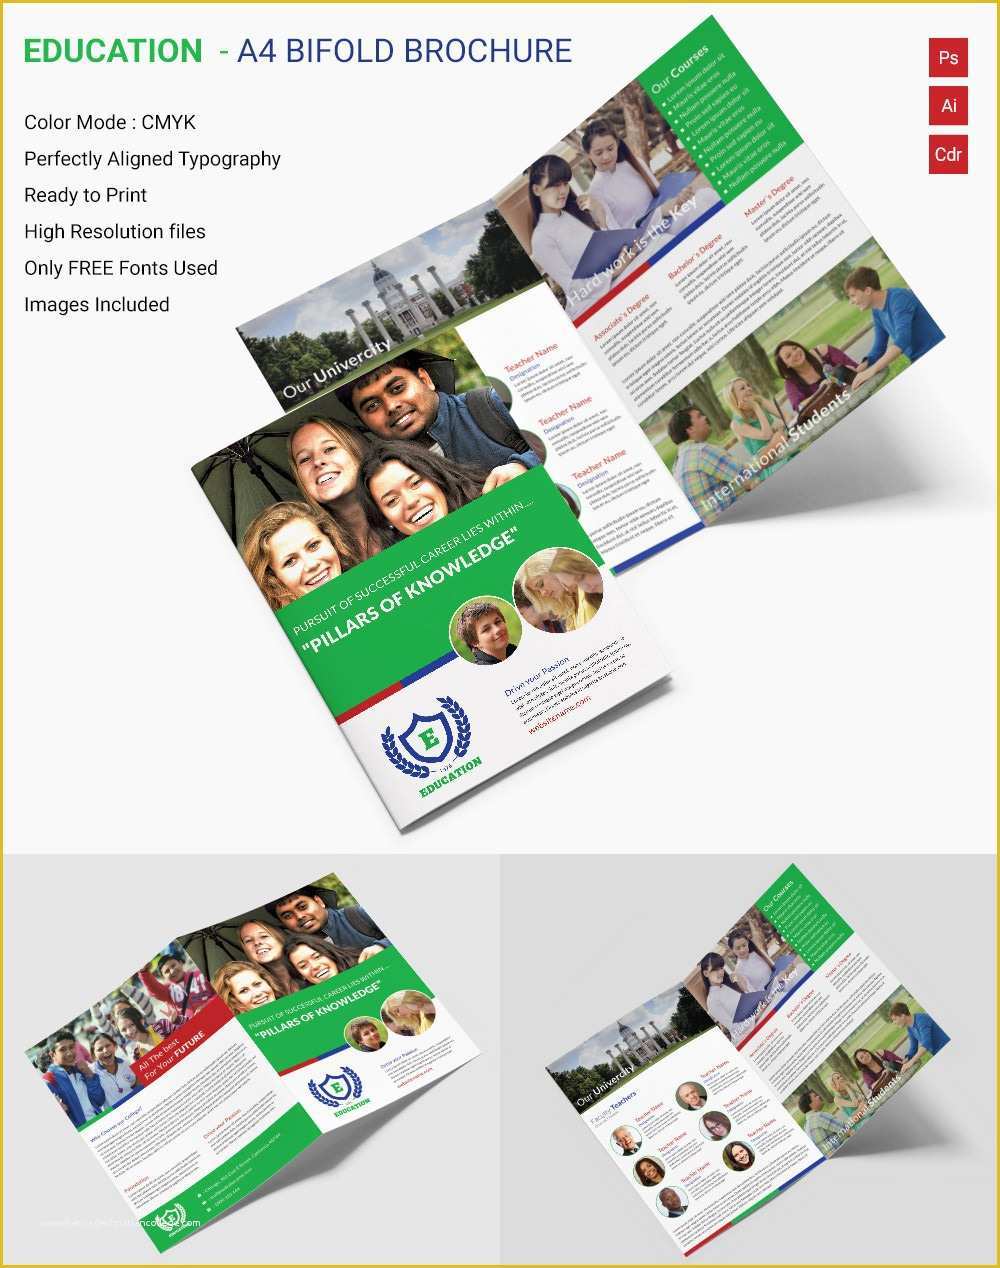 School Brochure Template Free Download Of Education Brochure Template 43 Free Psd Eps Indesign